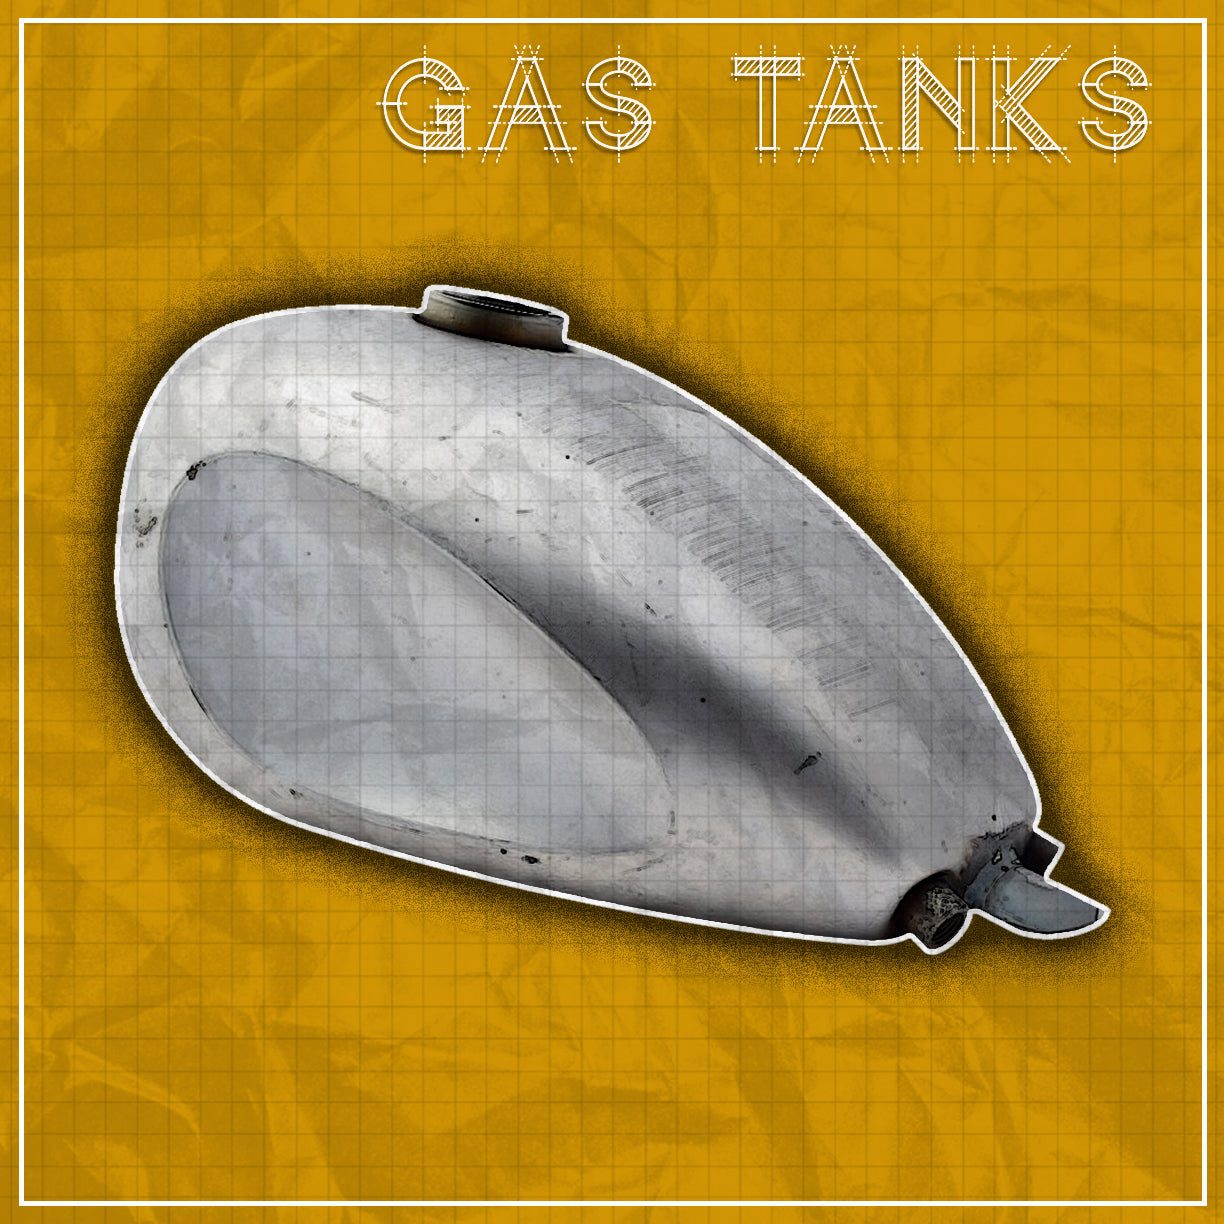 Custom Motorcycle Gas Tanks